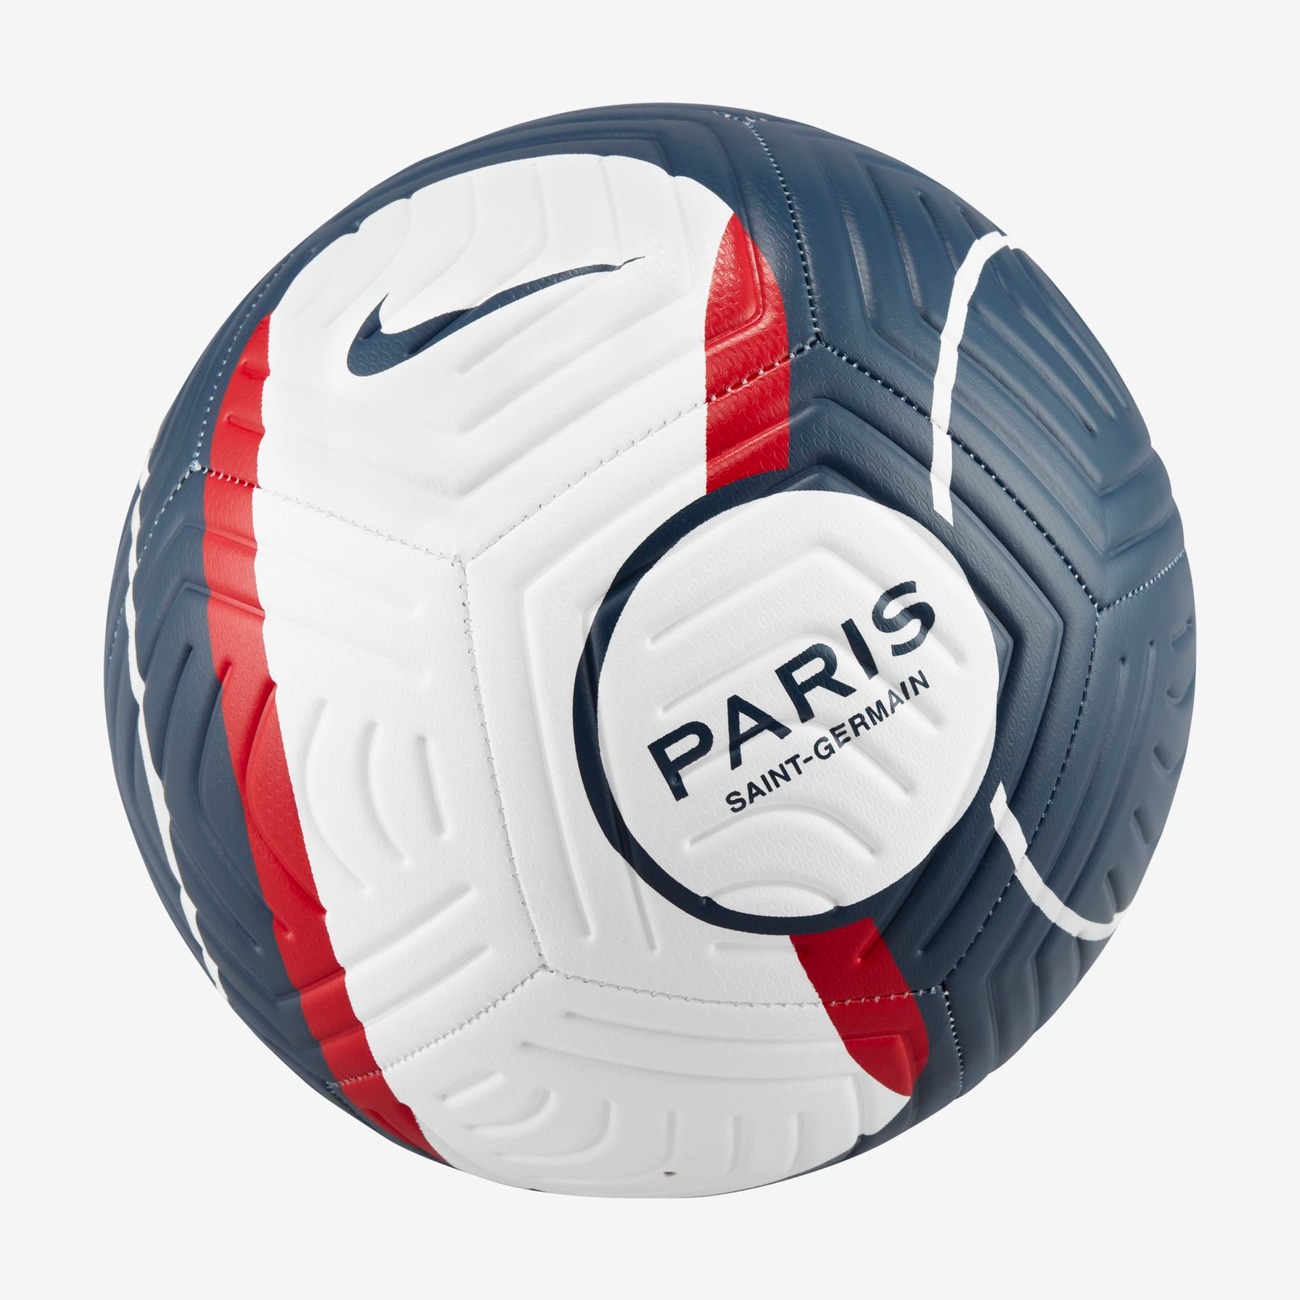 Bola Nike Paris Saint-Germain Strike - Foto 2